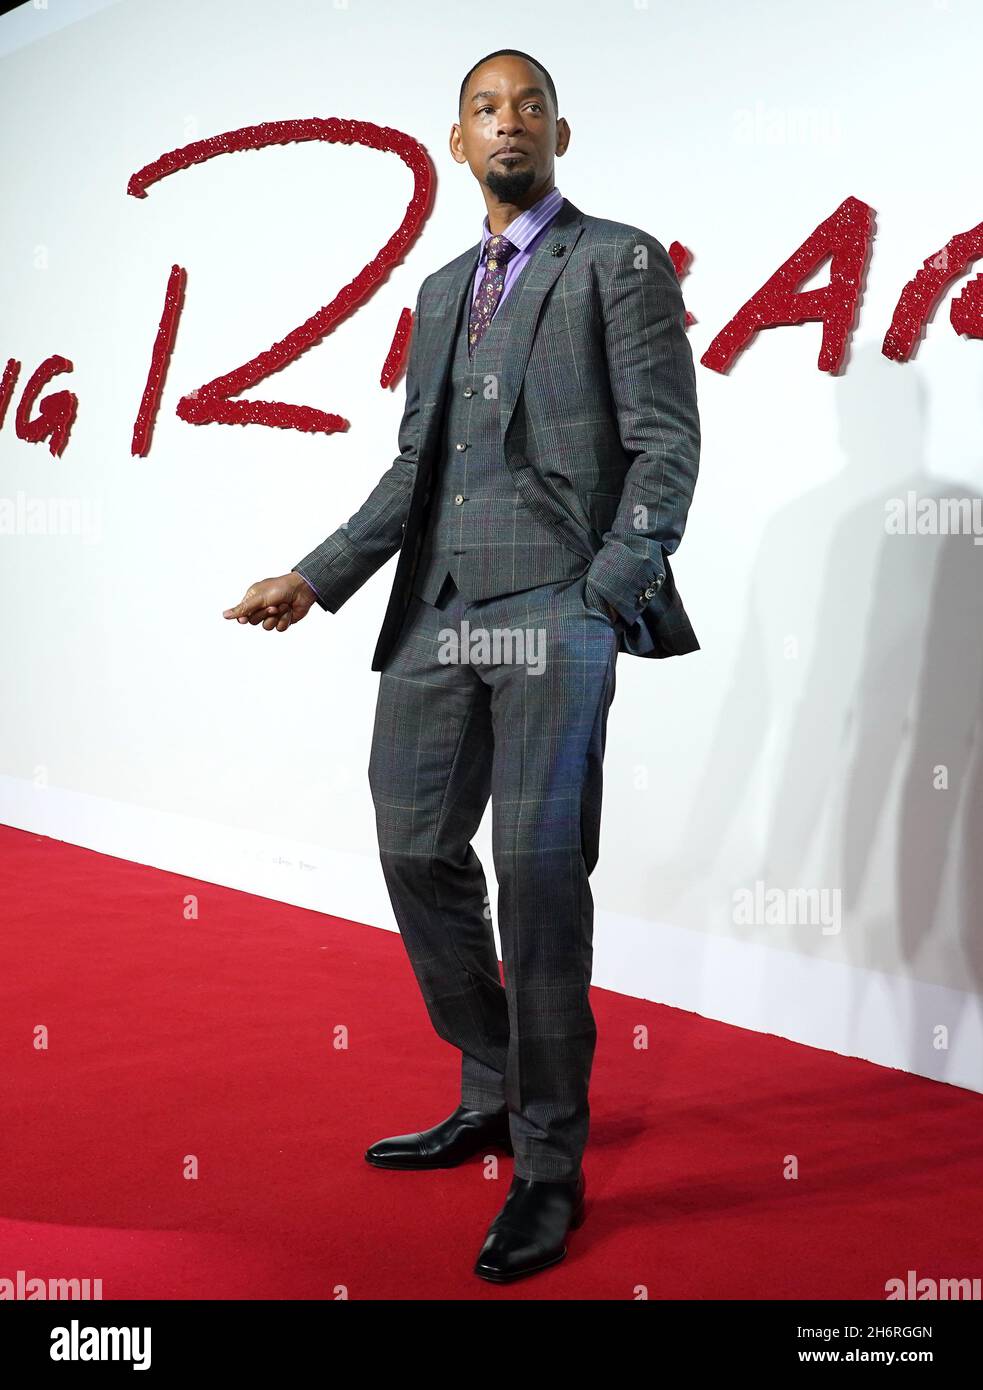 Will Smith arriva per una proiezione speciale di King Richard al cinema Curzon Mayfair di Londra. Data foto: Mercoledì 17 novembre 2021. Foto Stock